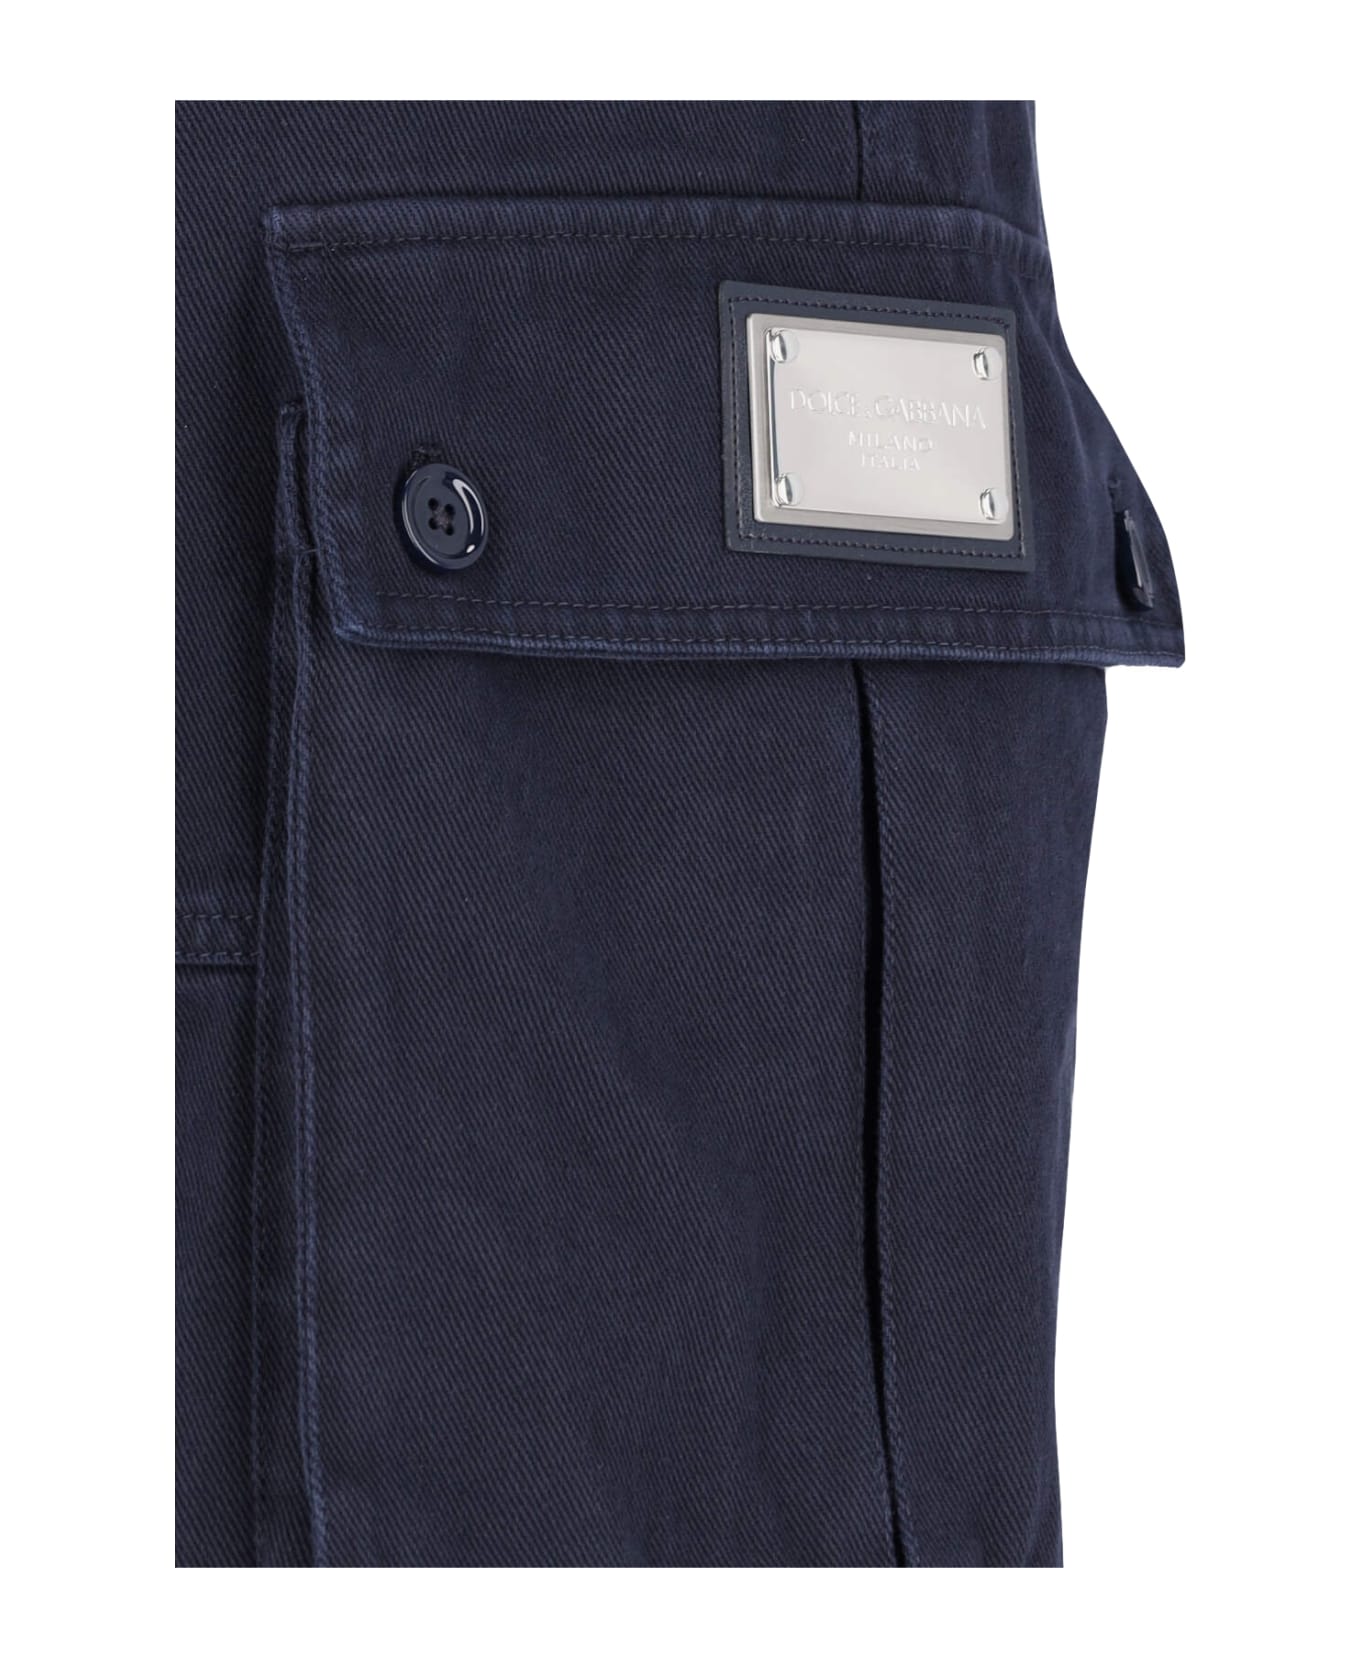 Dolce & Gabbana Cargo Bermuda Shorts - Blue ショートパンツ